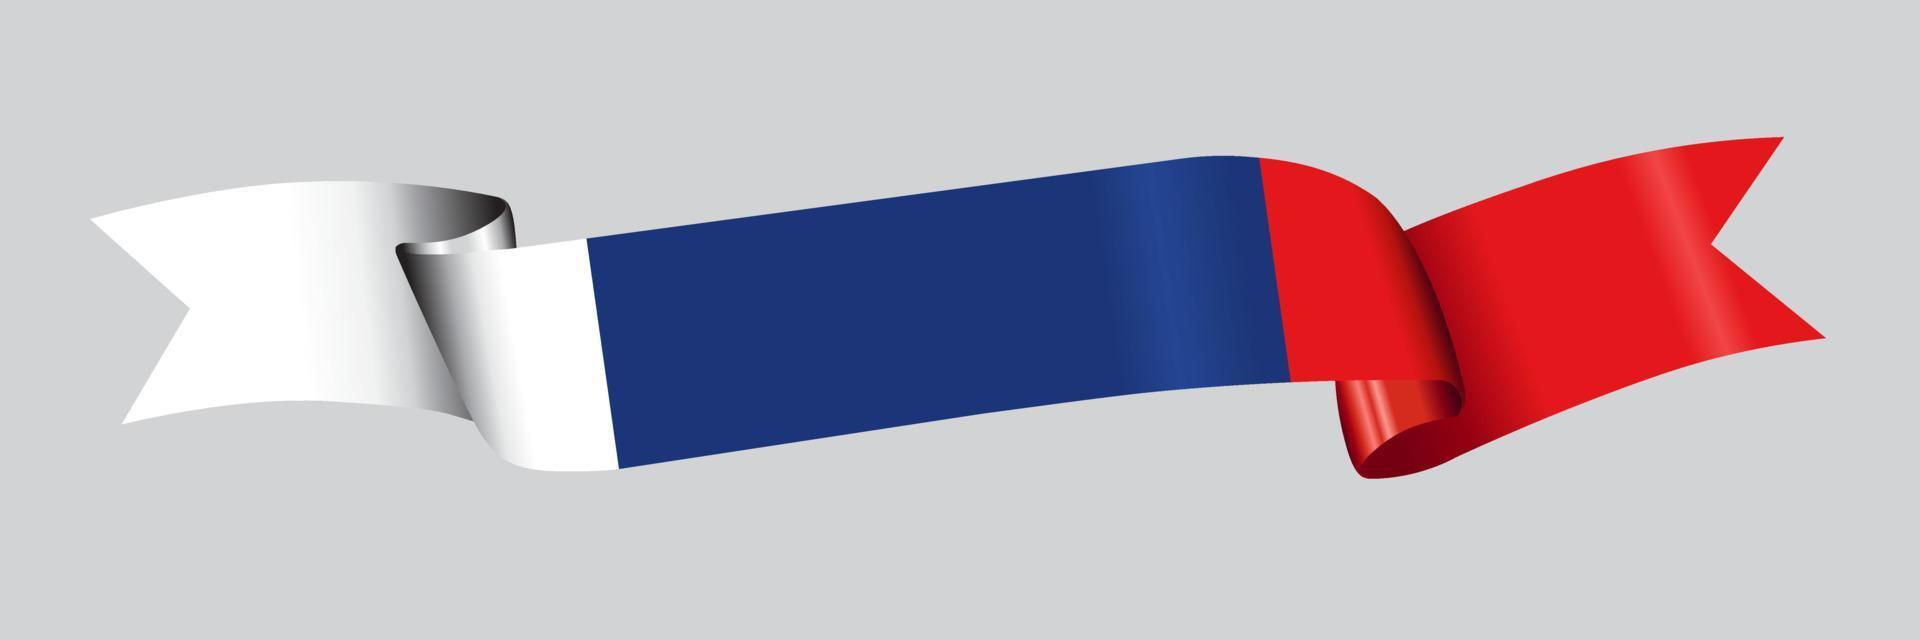 Bandeira 3D da Rússia na faixa de opções. vetor